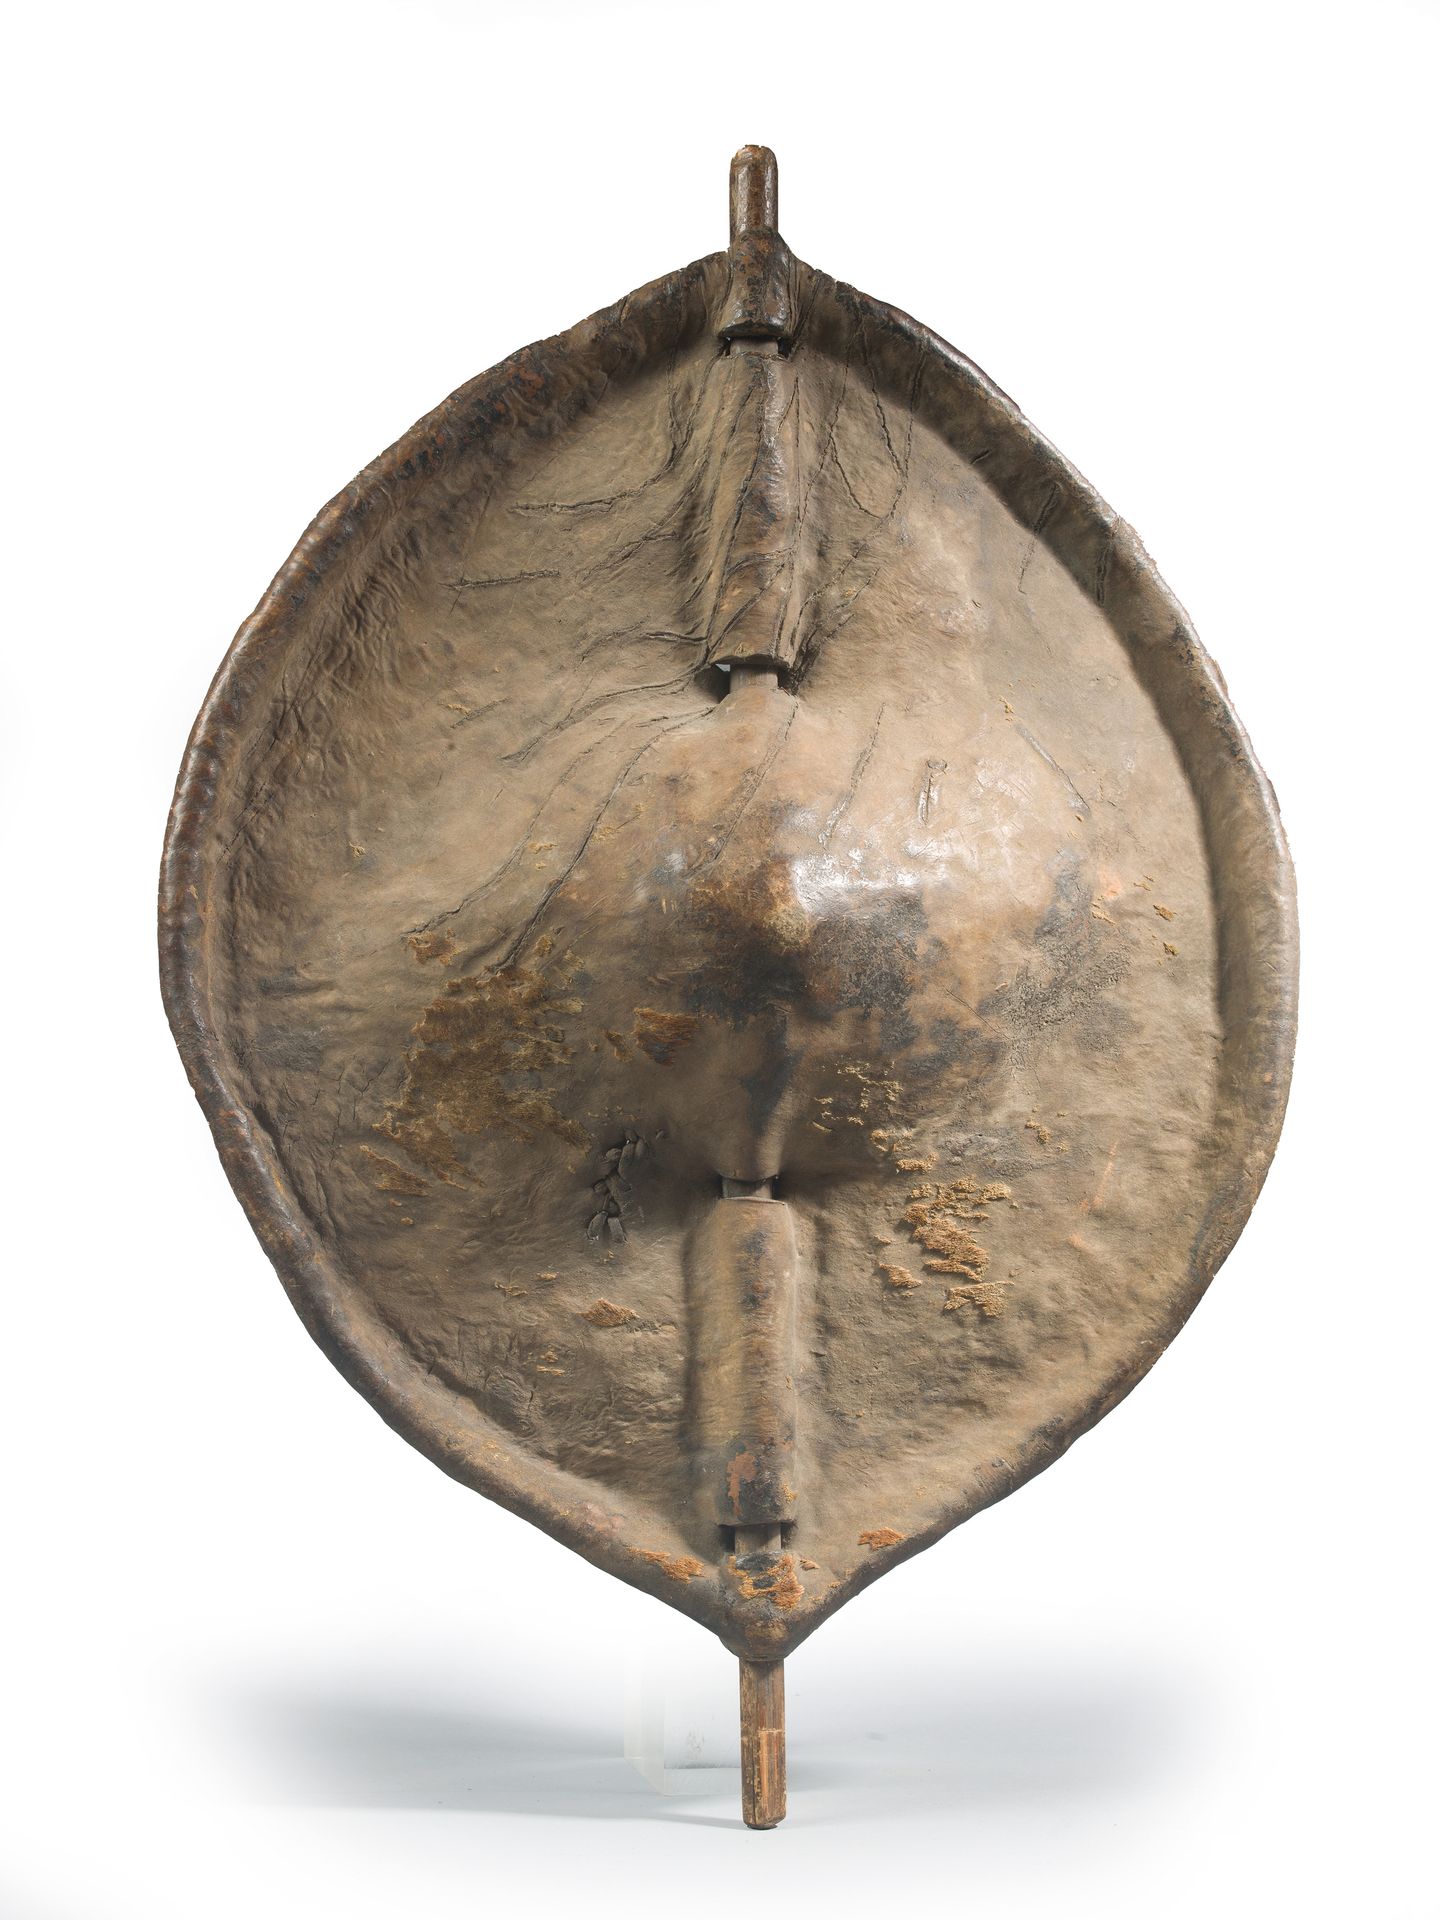 Null DINKA EIMER

Sudan 19.-20. Jahrhundert

Holz und Haut

49 x 69 cm